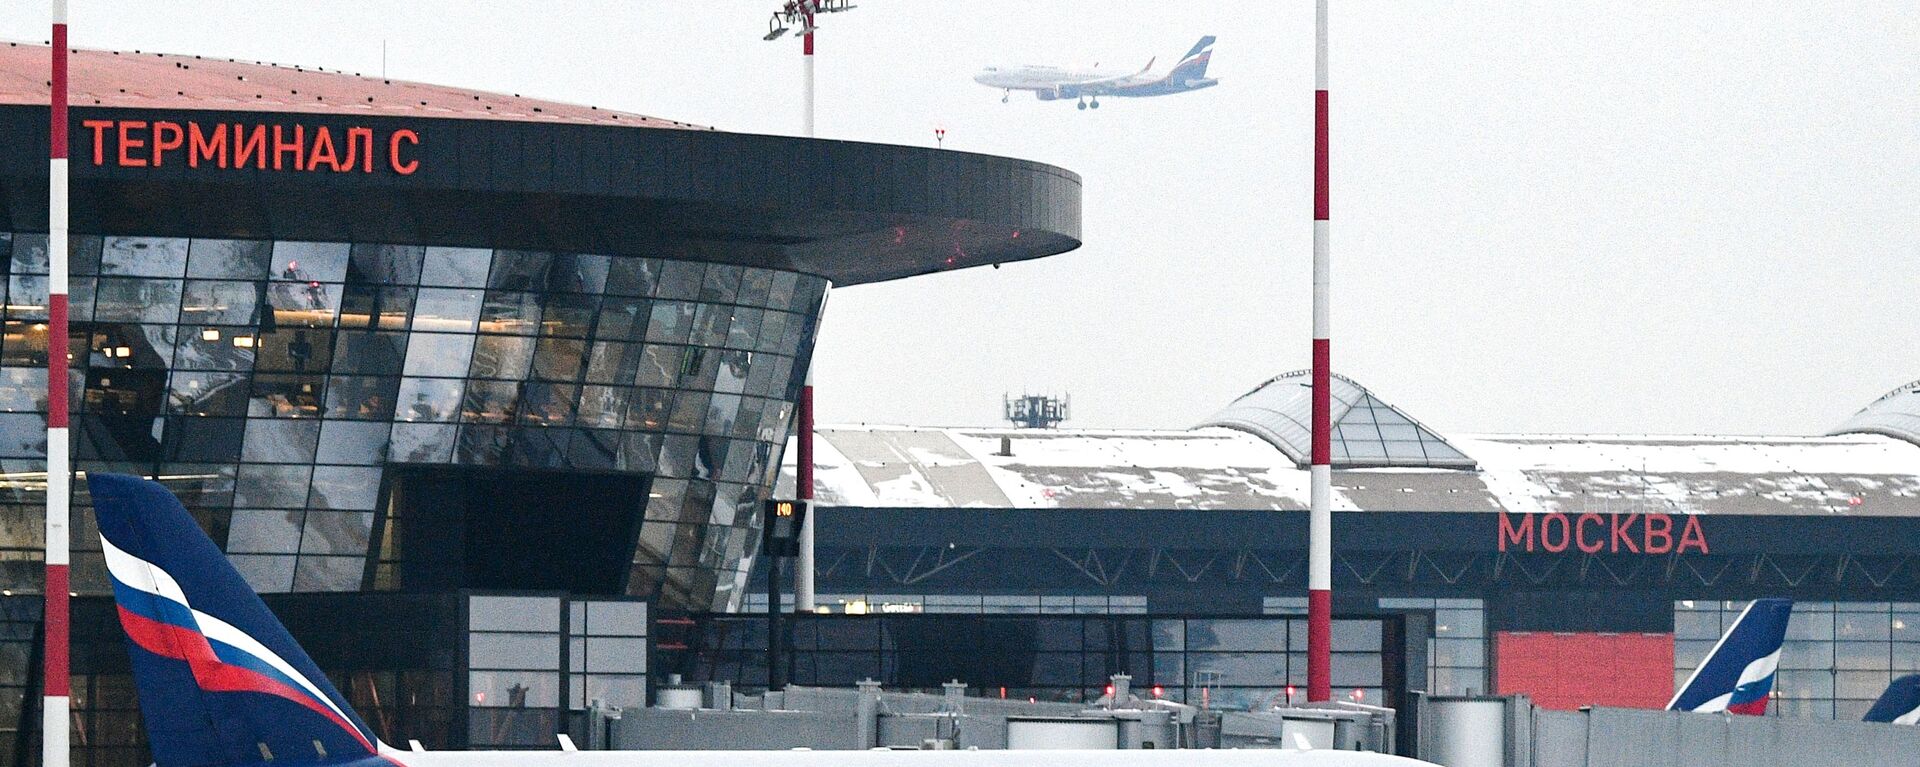 مطار شيريمتيفو، الطيران الروسي آيروفلوت، موسكو، روسيا مارس 2021 - سبوتنيك عربي, 1920, 11.11.2021